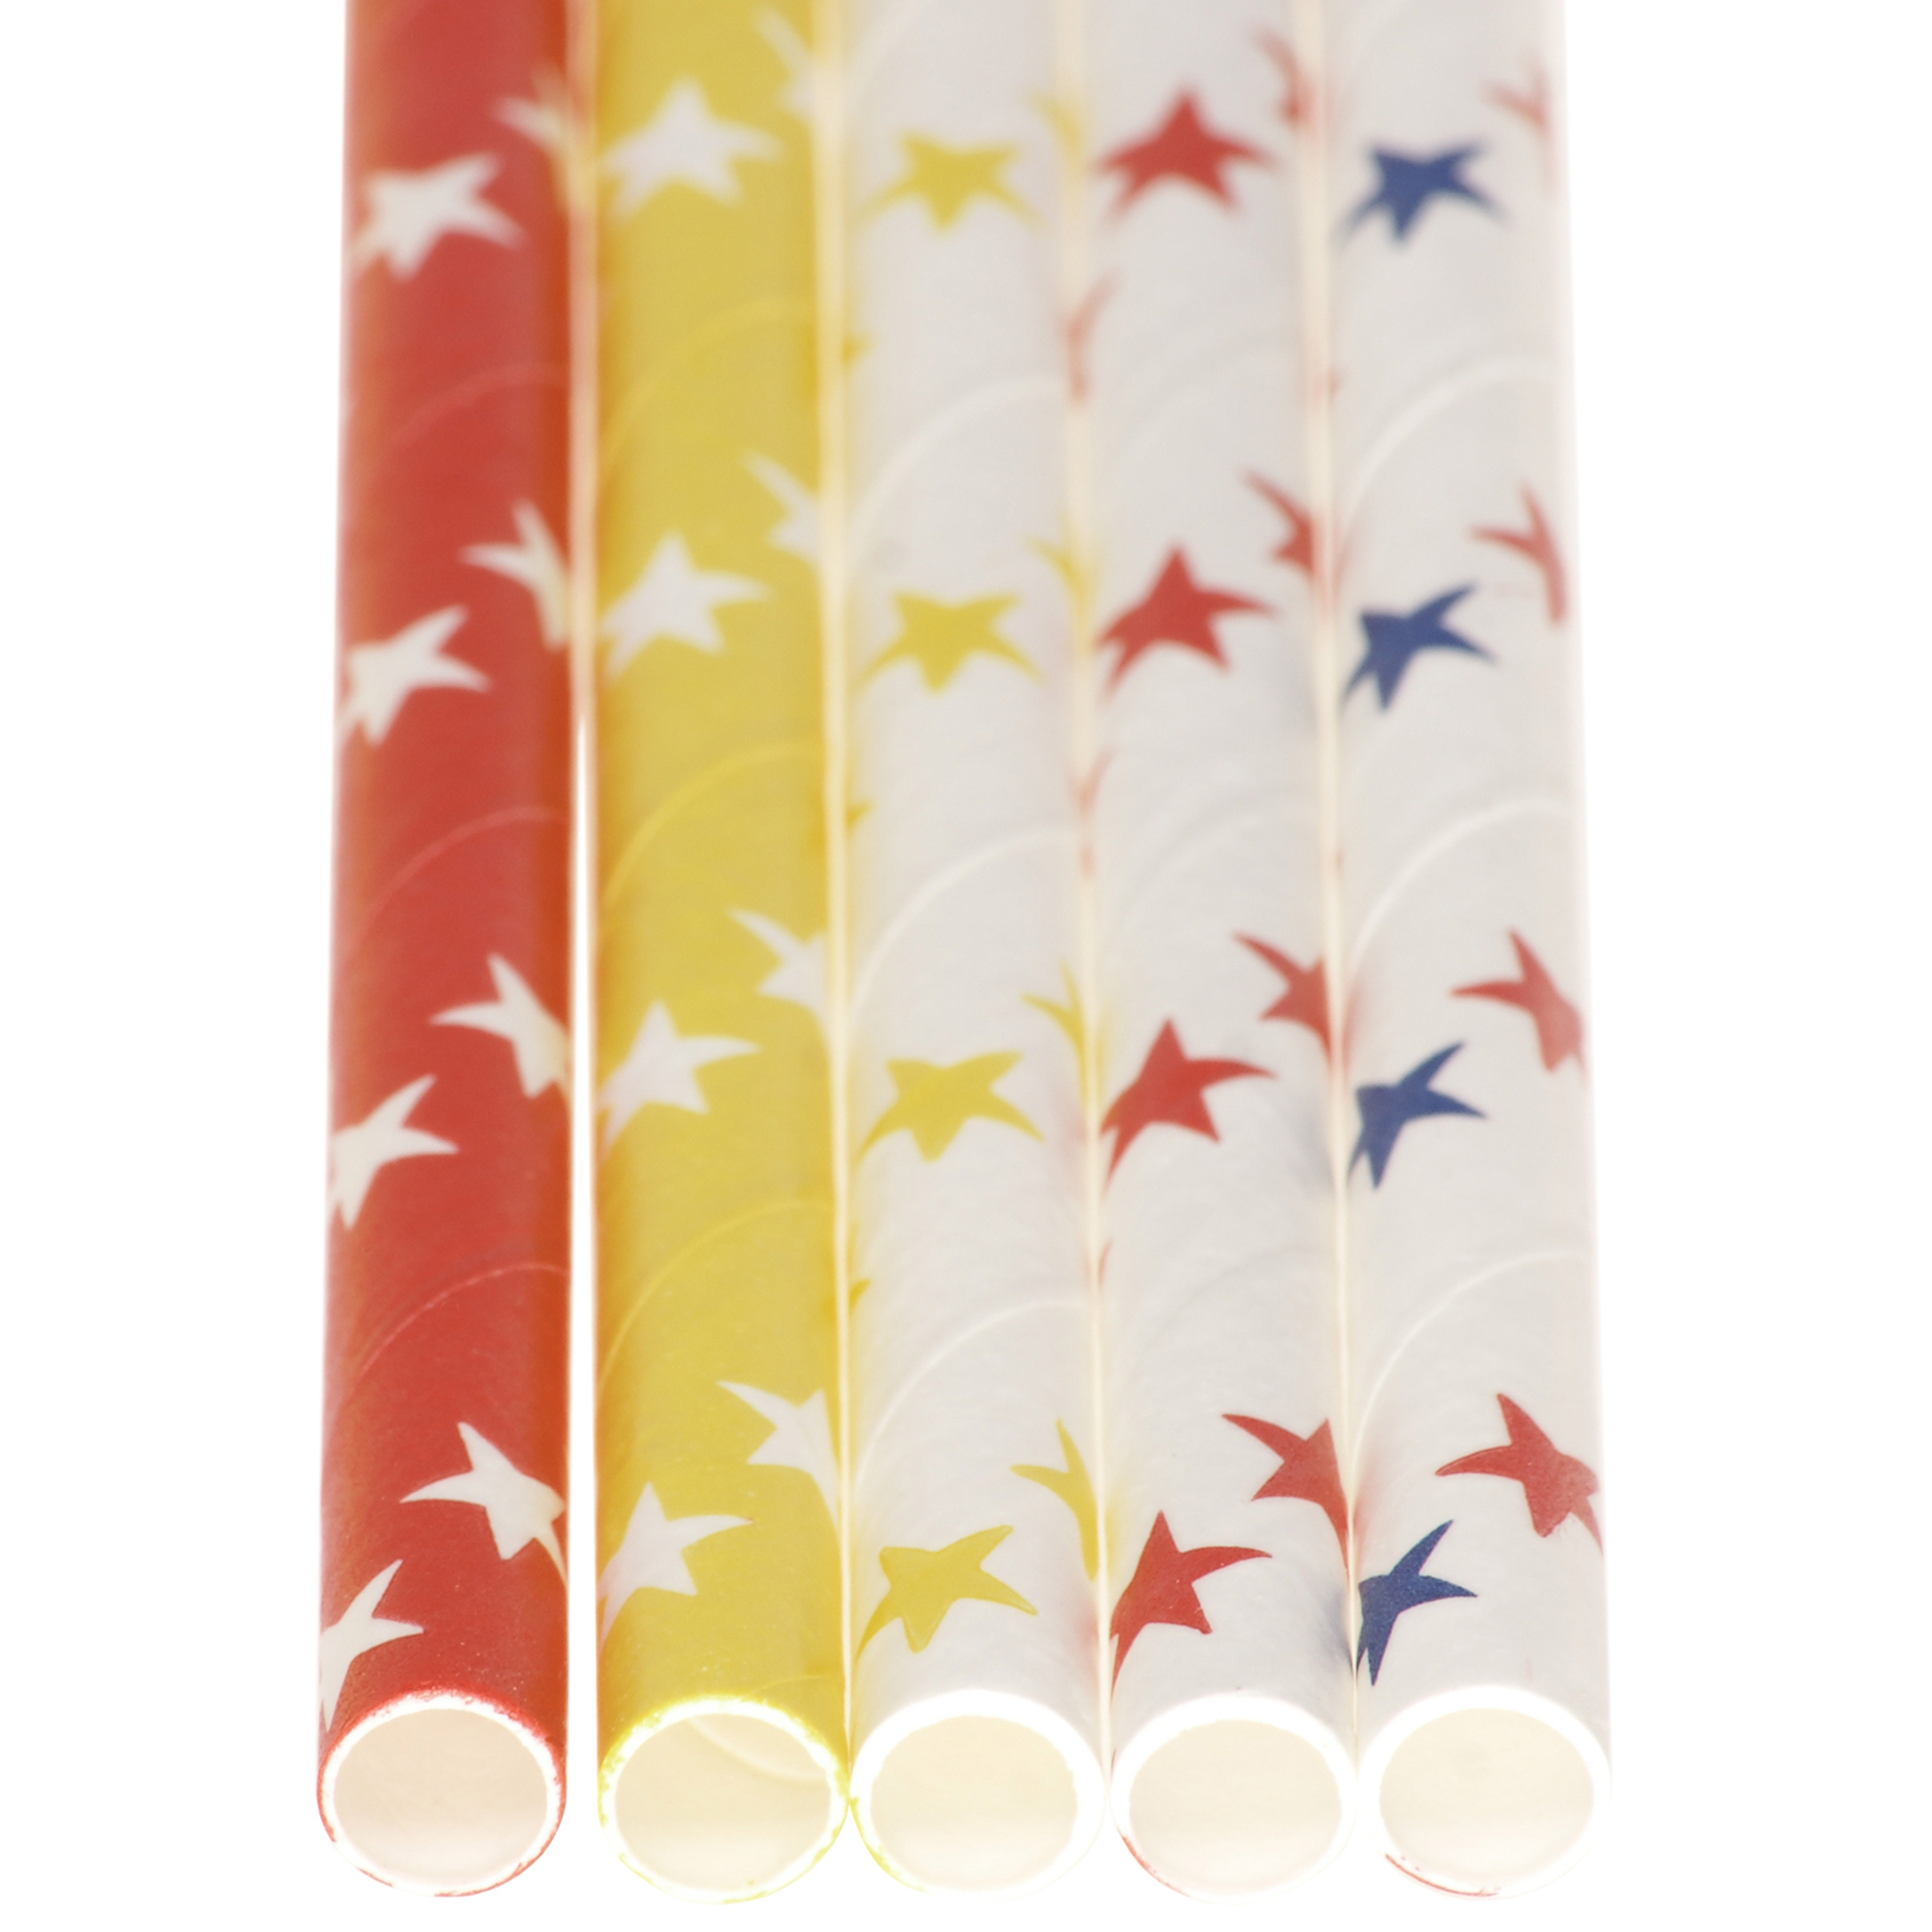 Papiertrinkhalme 'Sterne', 120 Stück, farbig sortiert